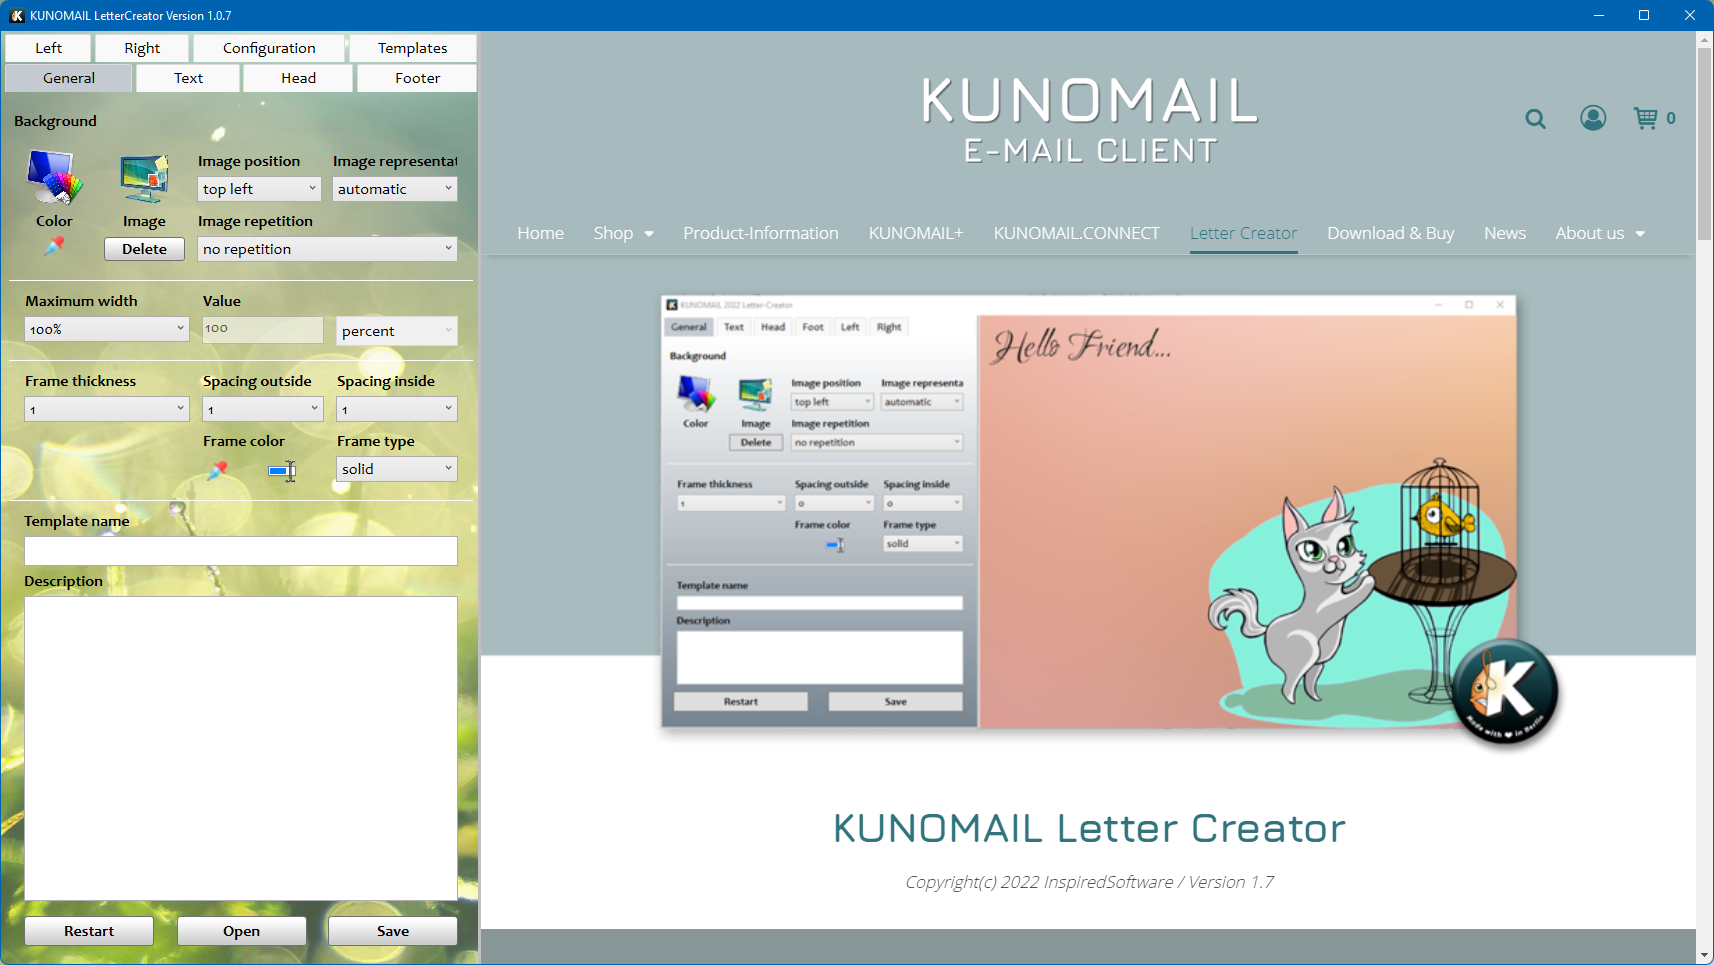 KUNOMAIL Letter Creator